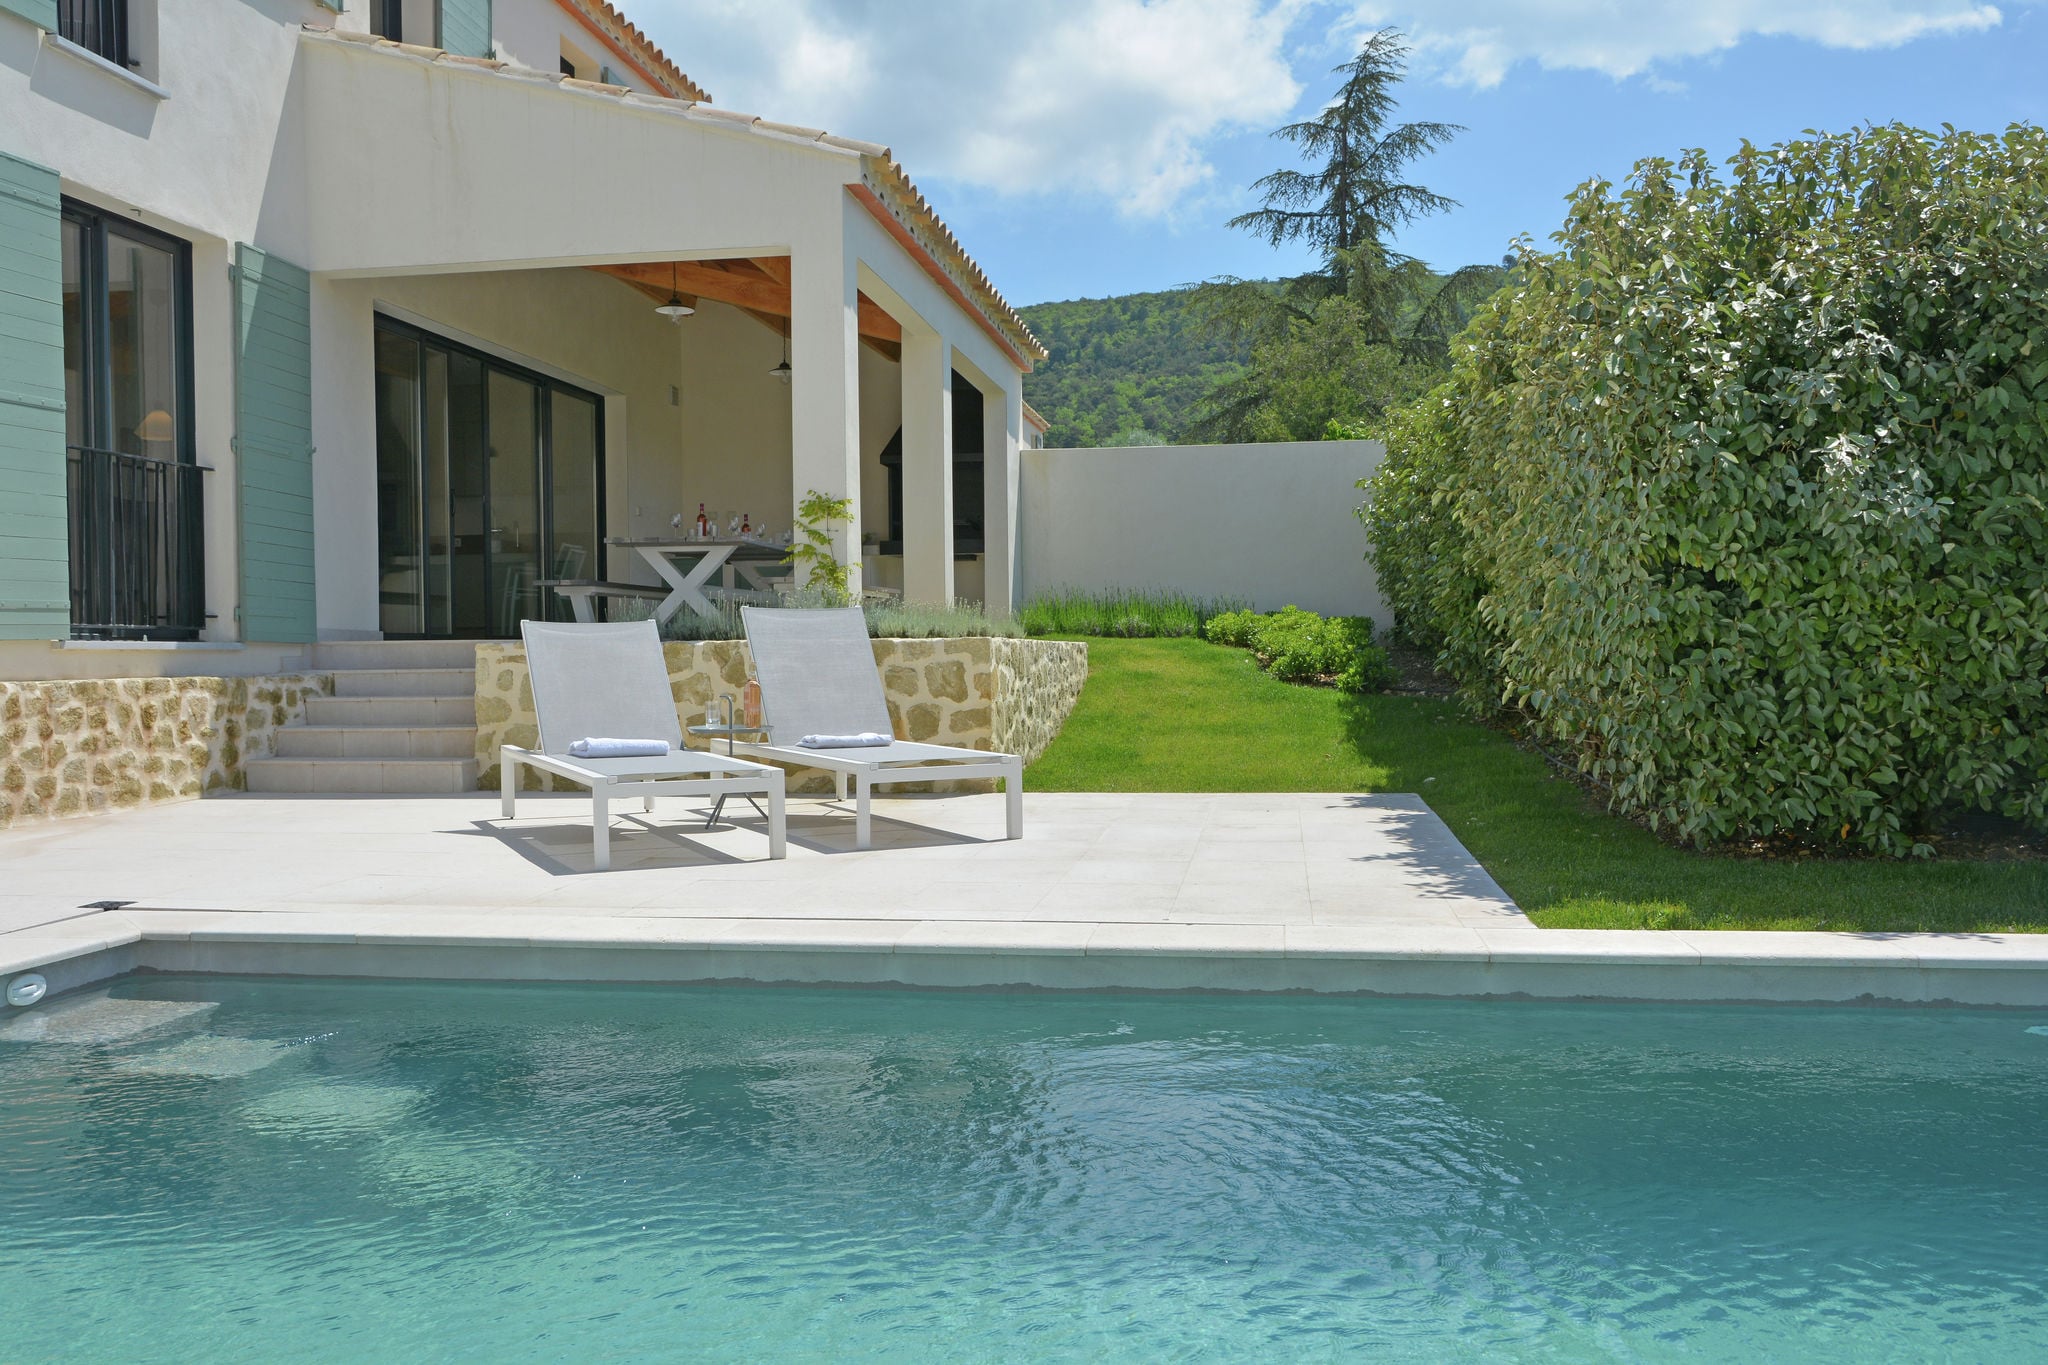 Schitterende villa met verwarmbaar privézwembad in domein op loopafstand dorp